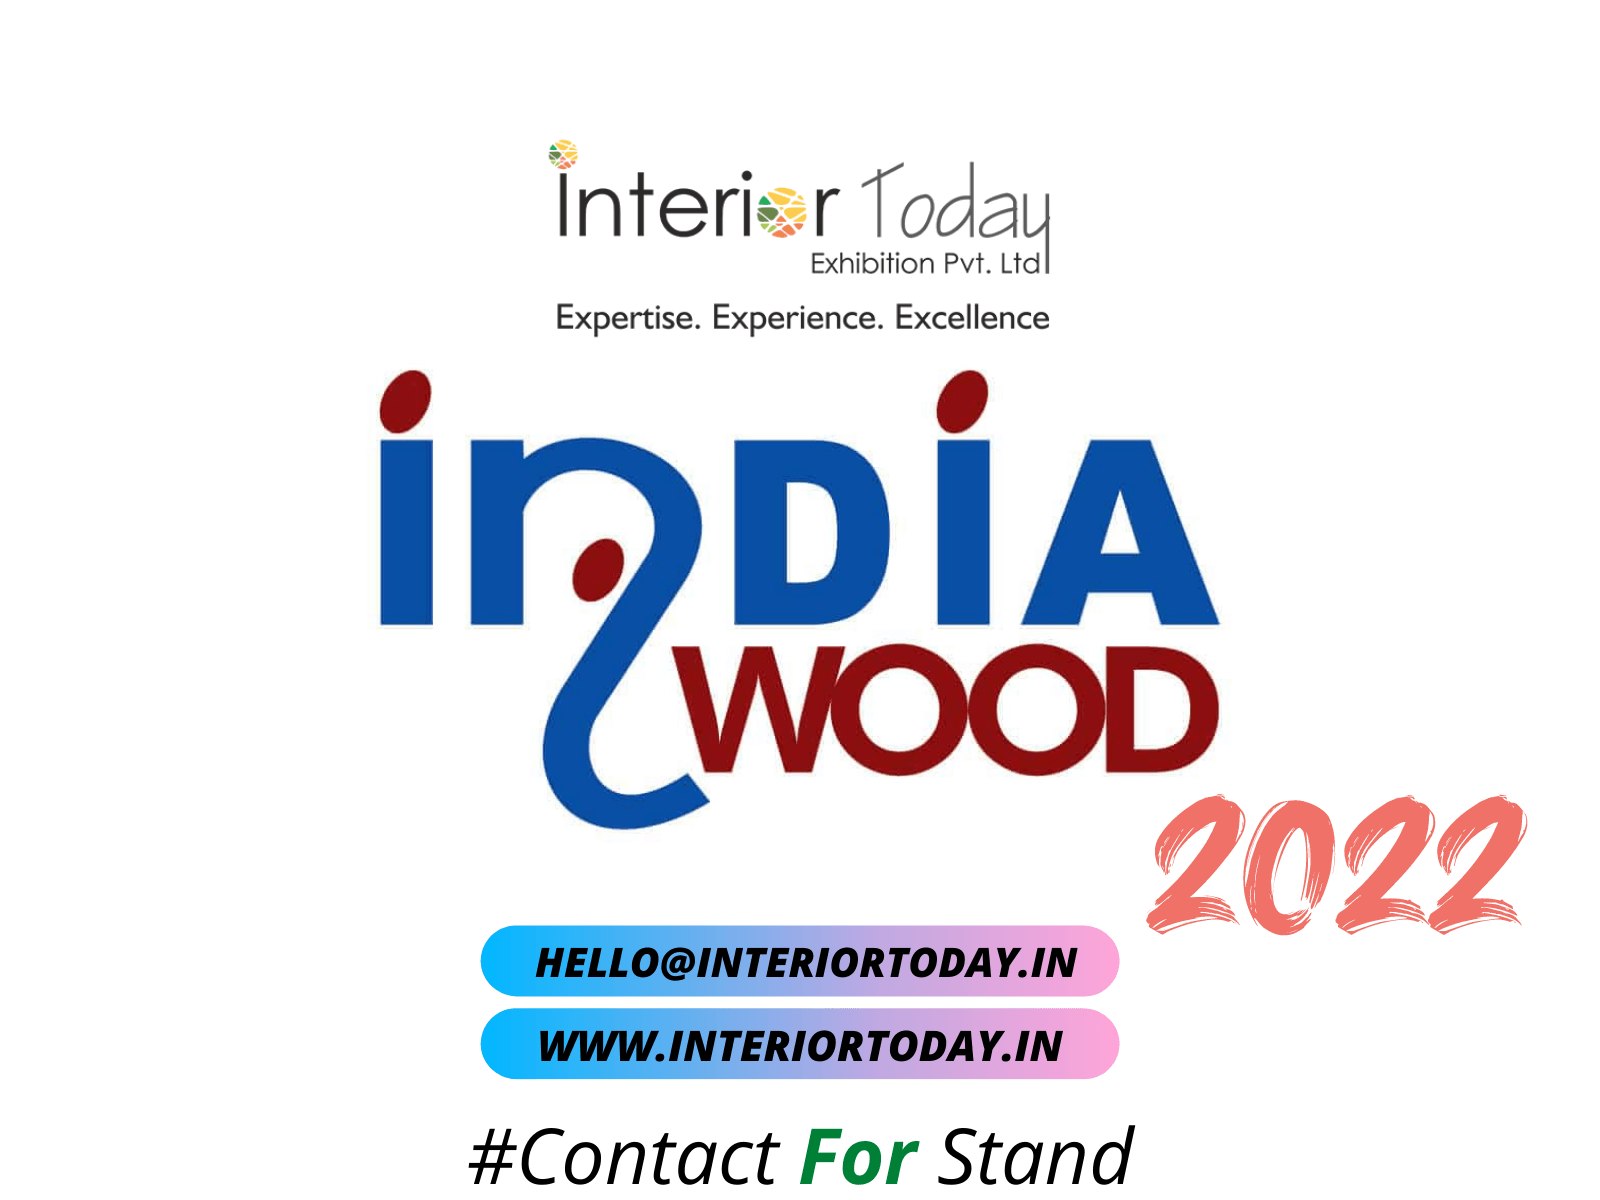 #indiawood2022